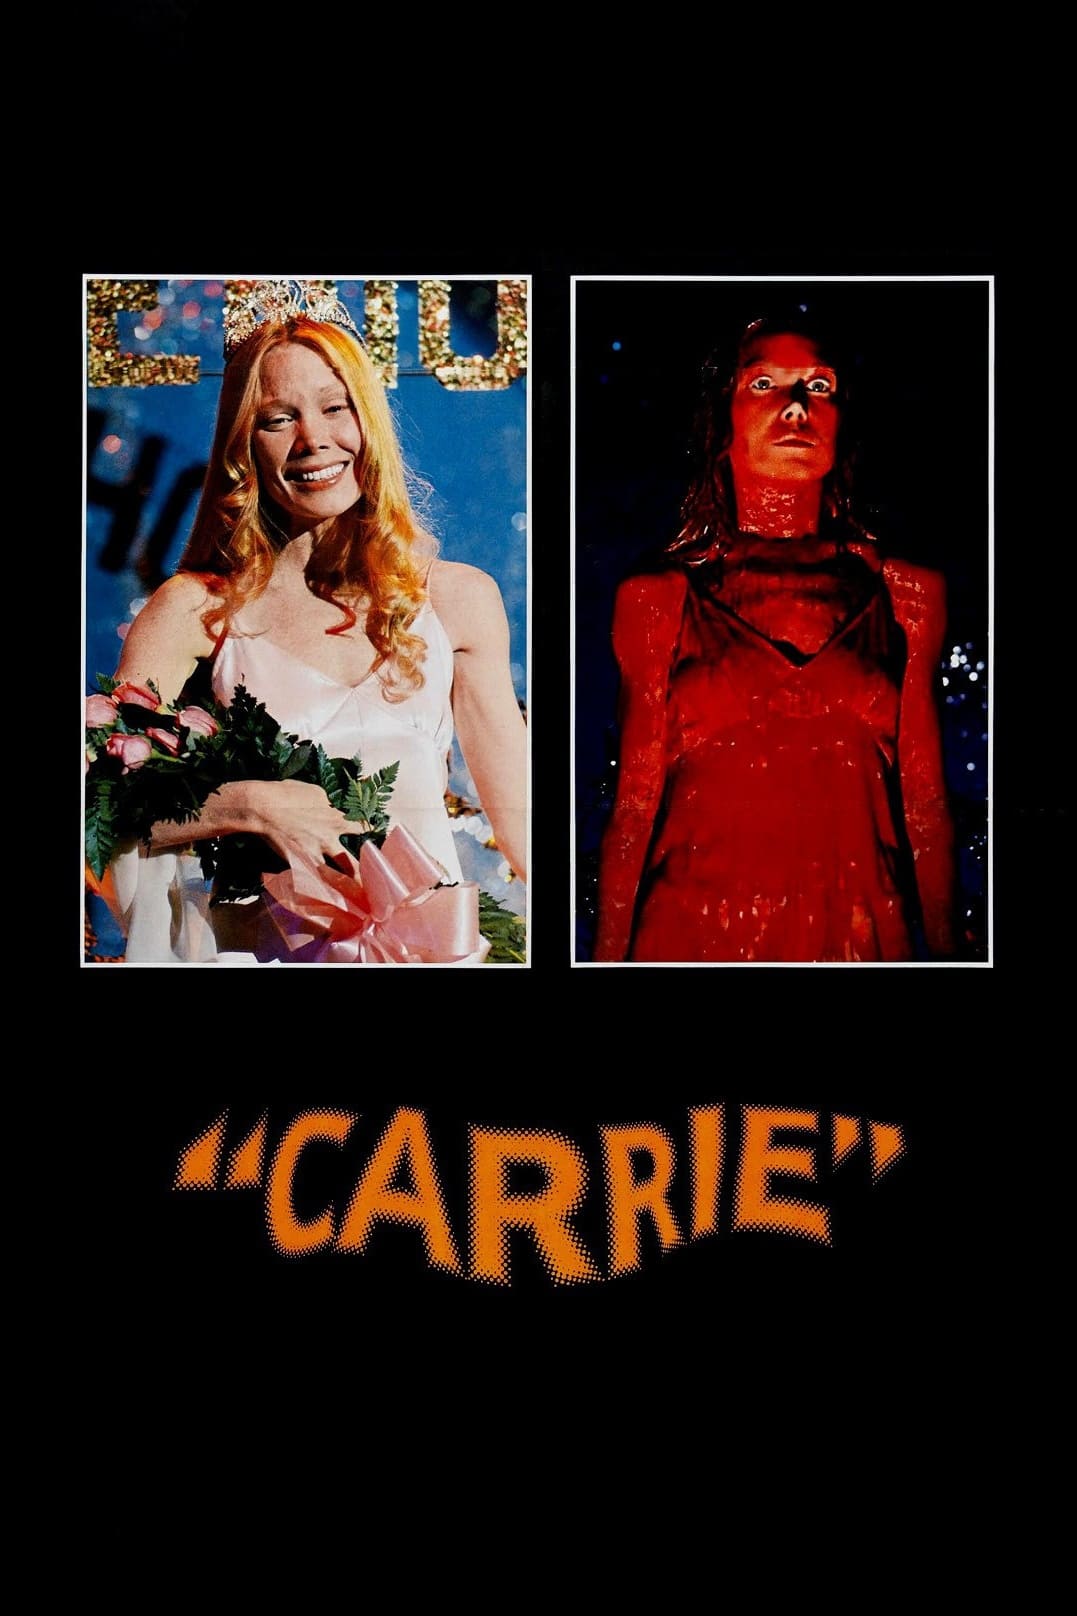 Carrie, A Estranha (1976)